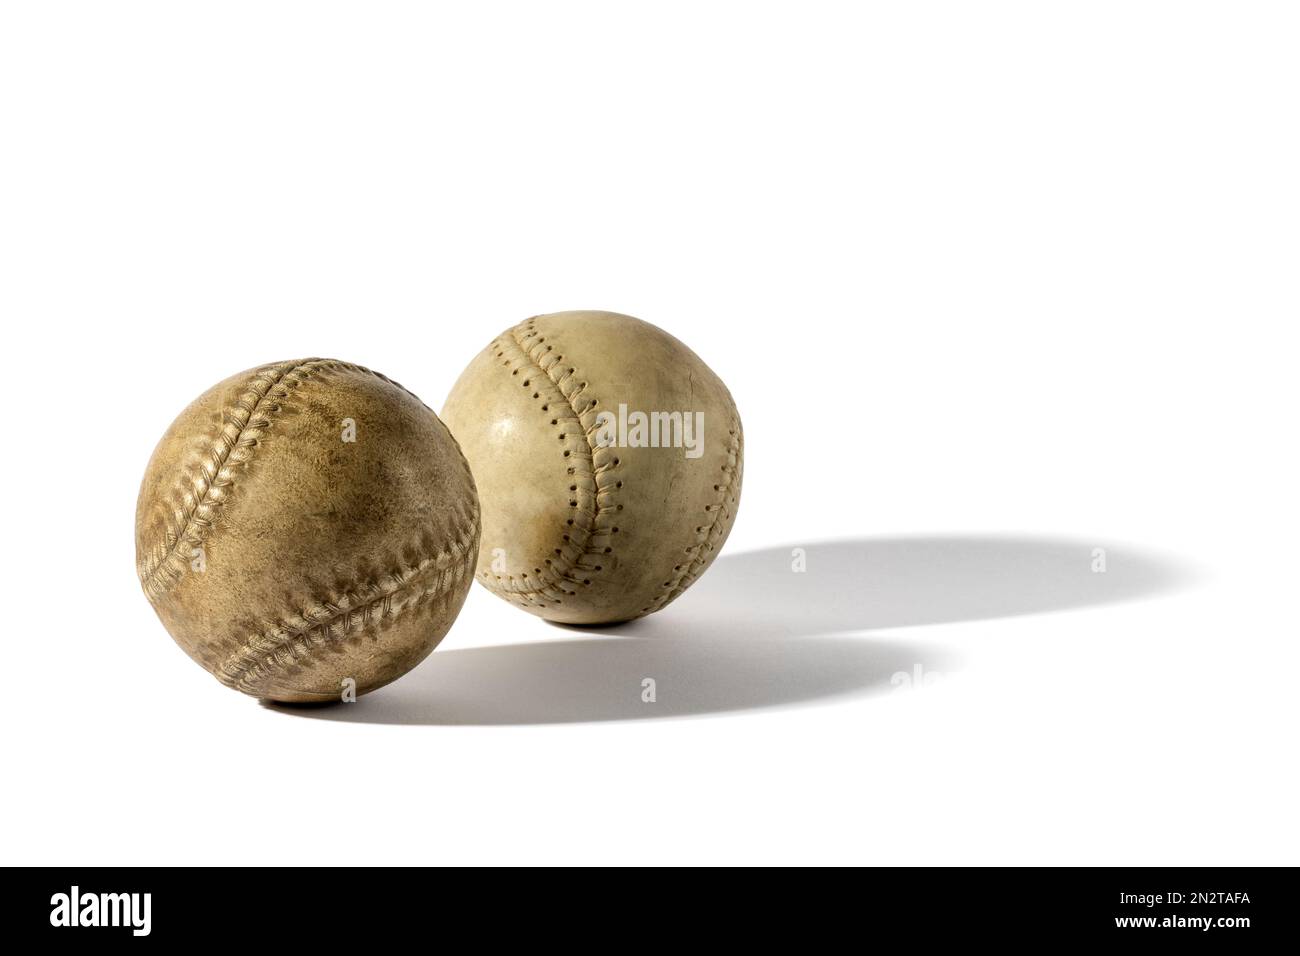 Par de pelotas de béisbol retro hechas de sombras de cuero shabby sobre fondo blanco Foto de stock